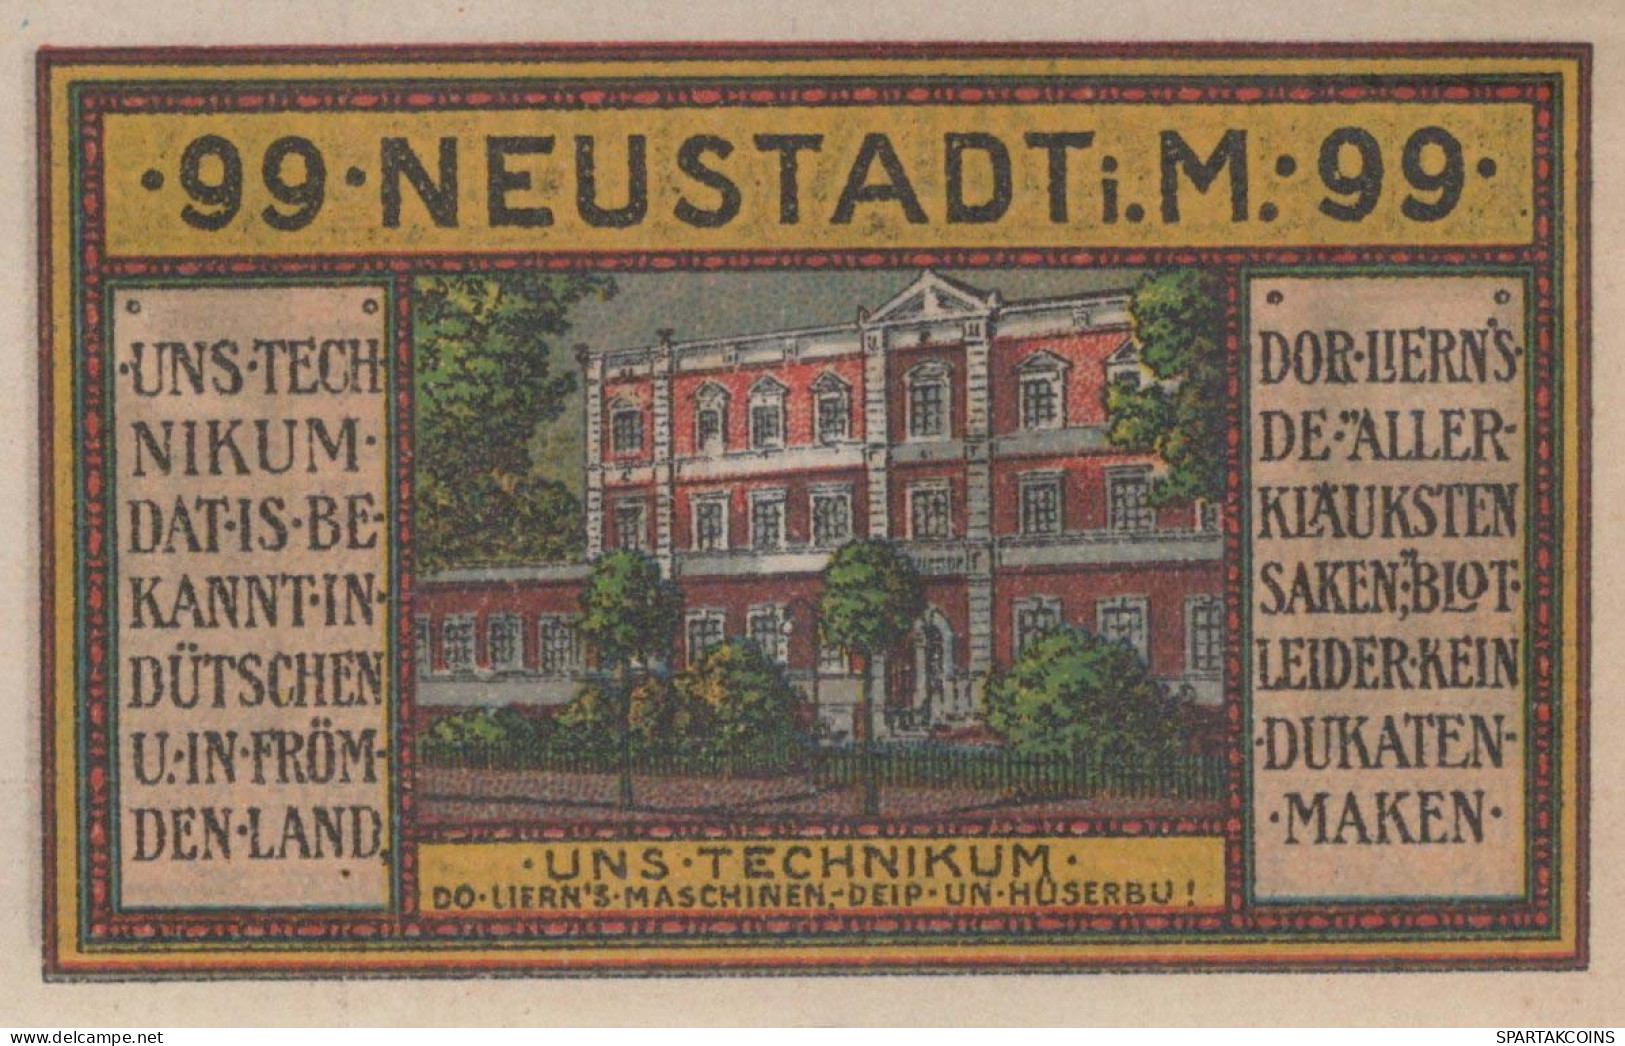 99 PFENNIG 1921 NEU IN MECKLENBURG Mecklenburg-Schwerin DEUTSCHLAND #PF667 - Lokale Ausgaben